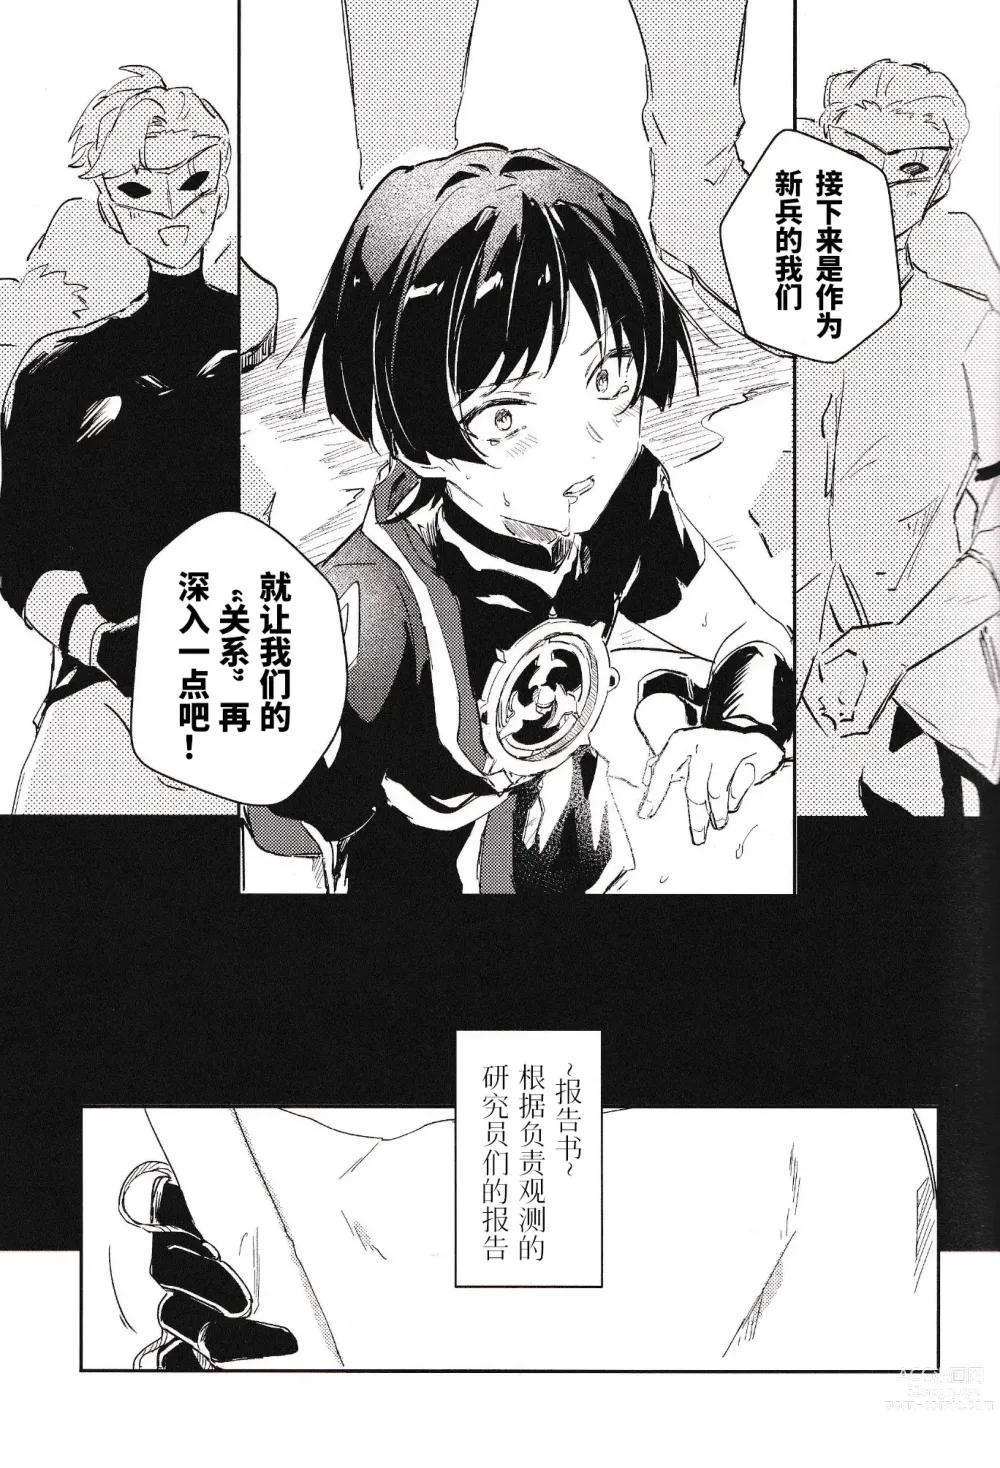 Page 13 of doujinshi 与下属相处融洽的方法